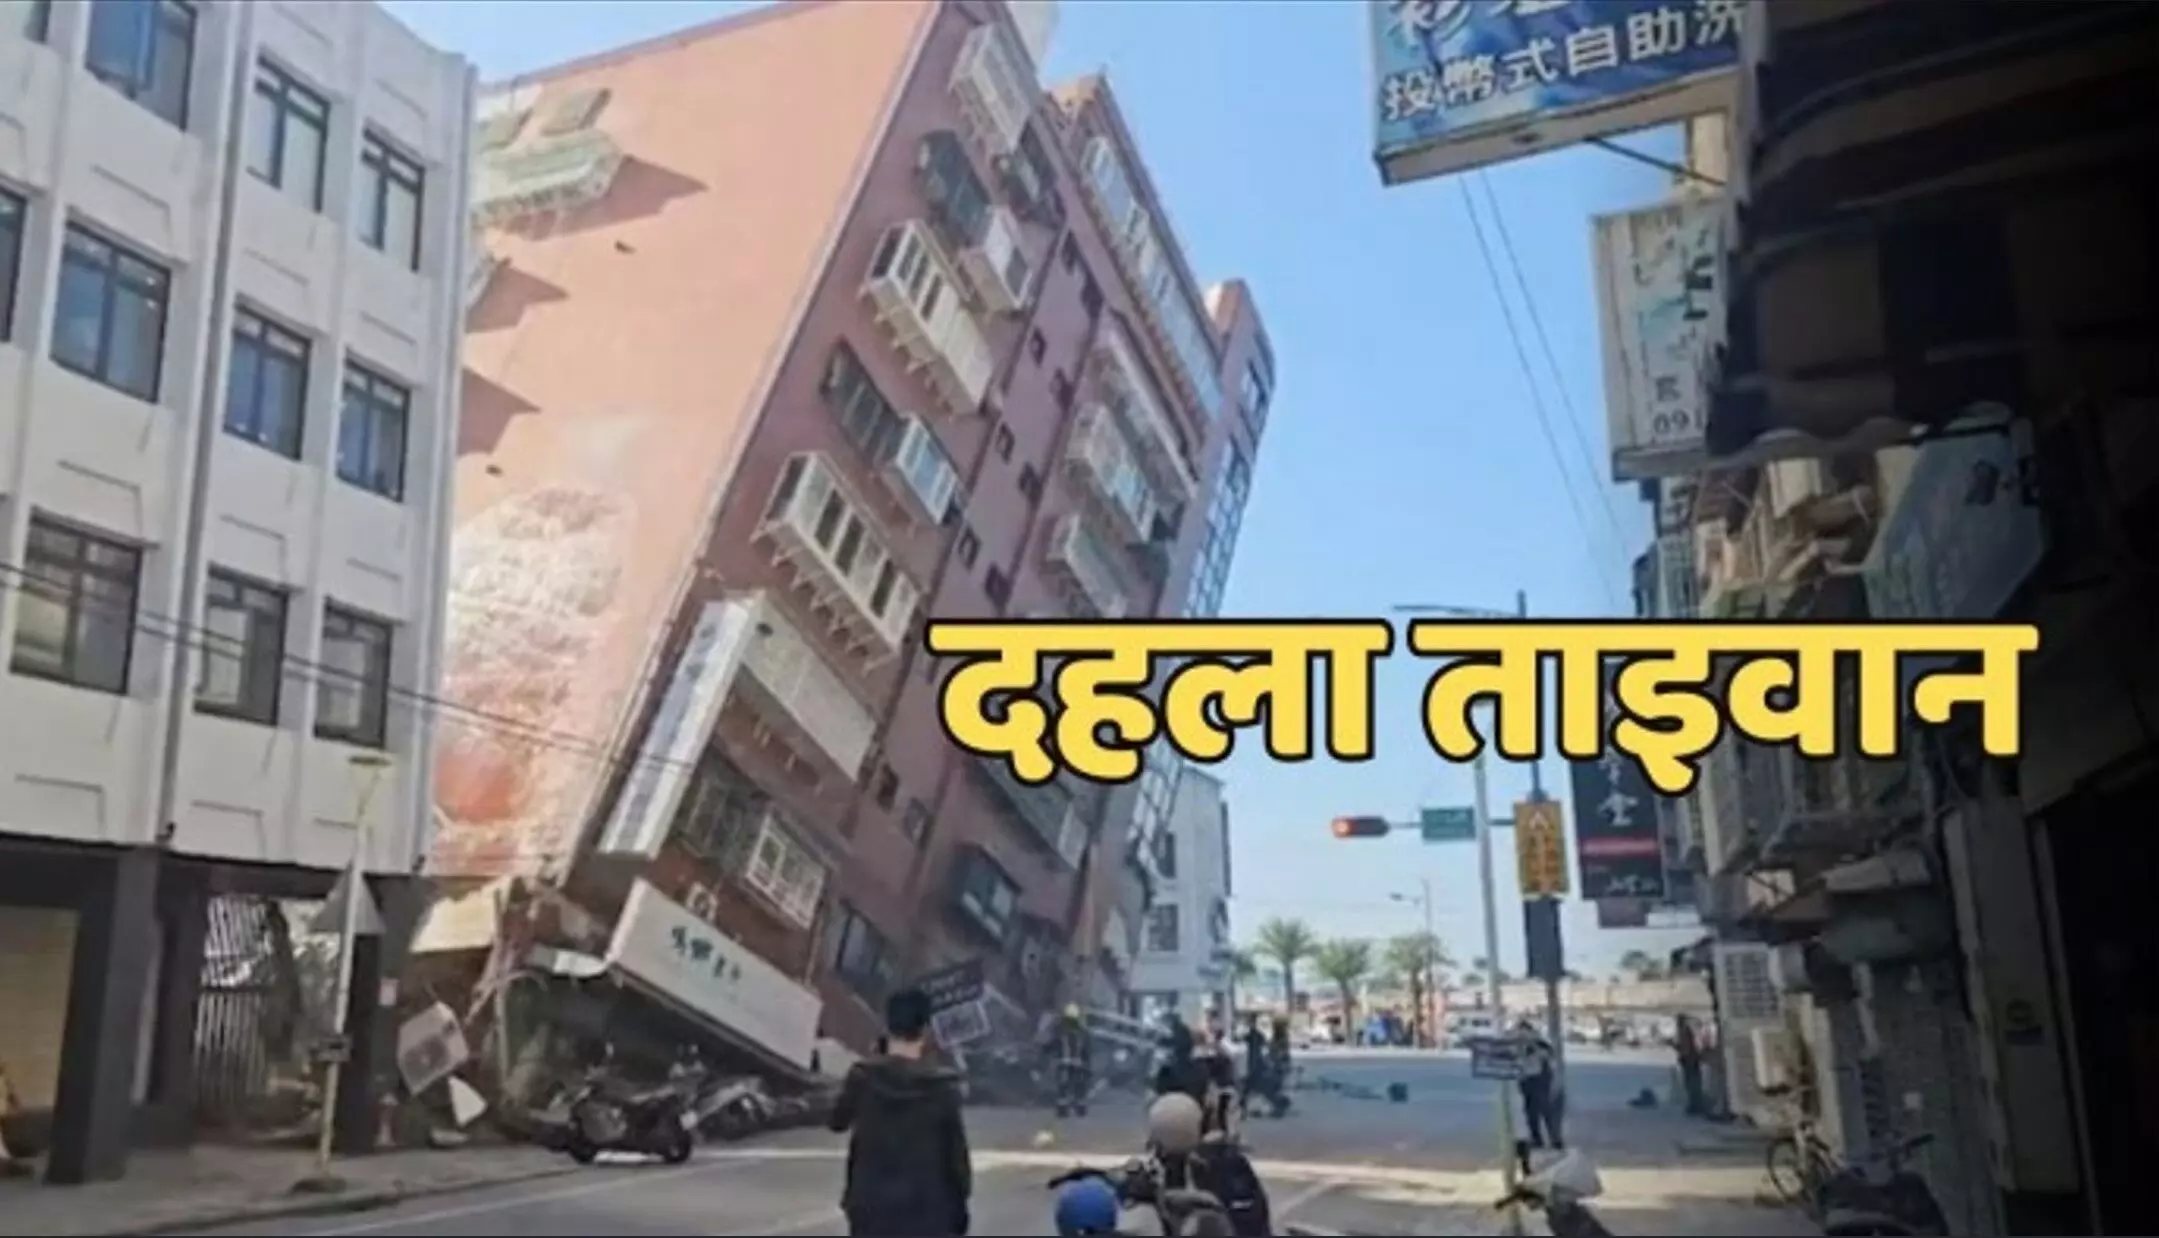 Taiwan earthquakes: भूकंप के तेज झटकों से दहला ताइवान, रिक्टर स्केल पर तीव्रता 6.3 दर्ज